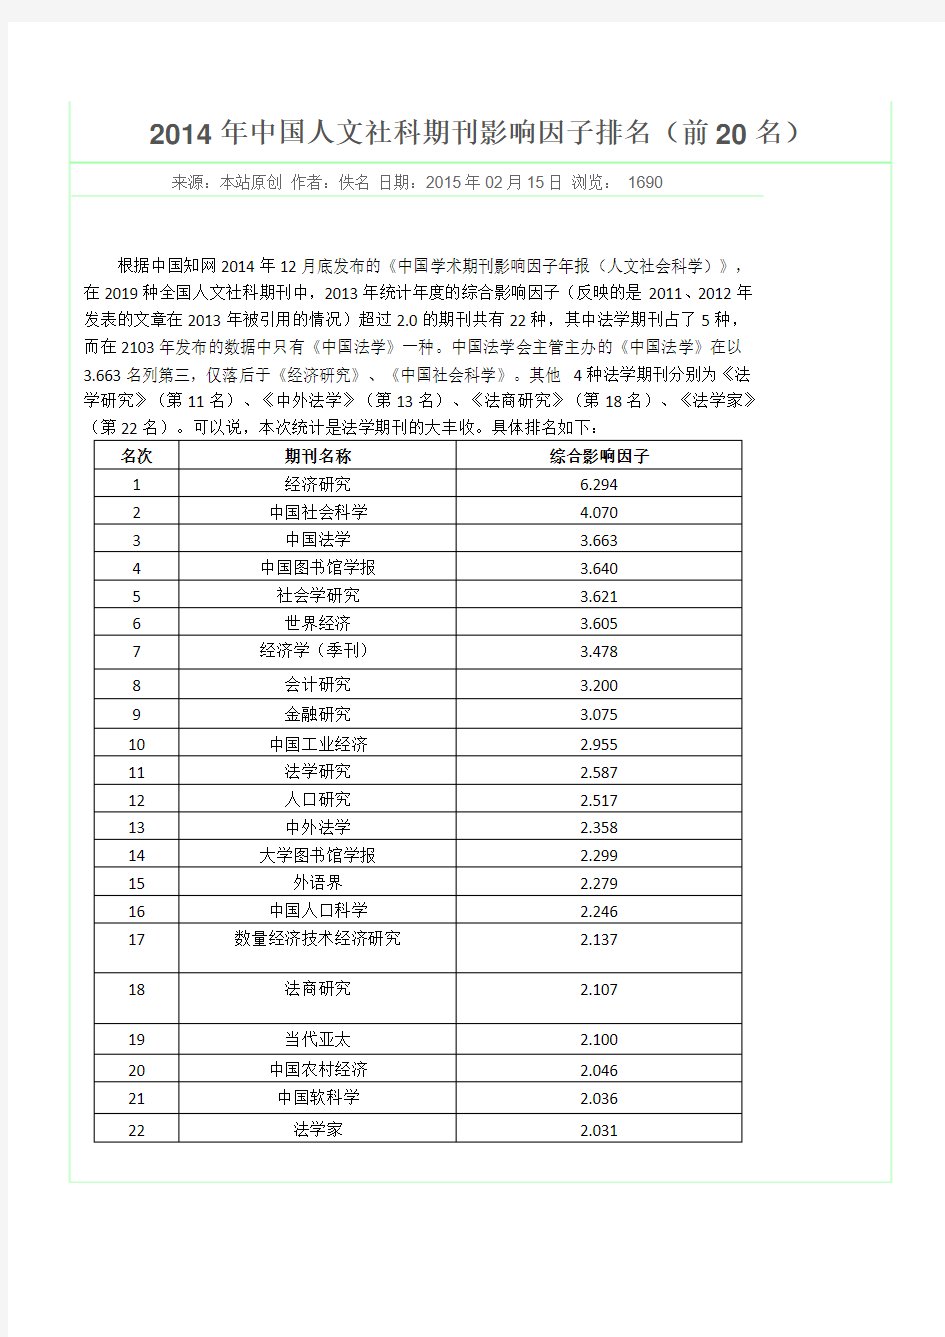 2014年中国人文社科期刊影响因子排名